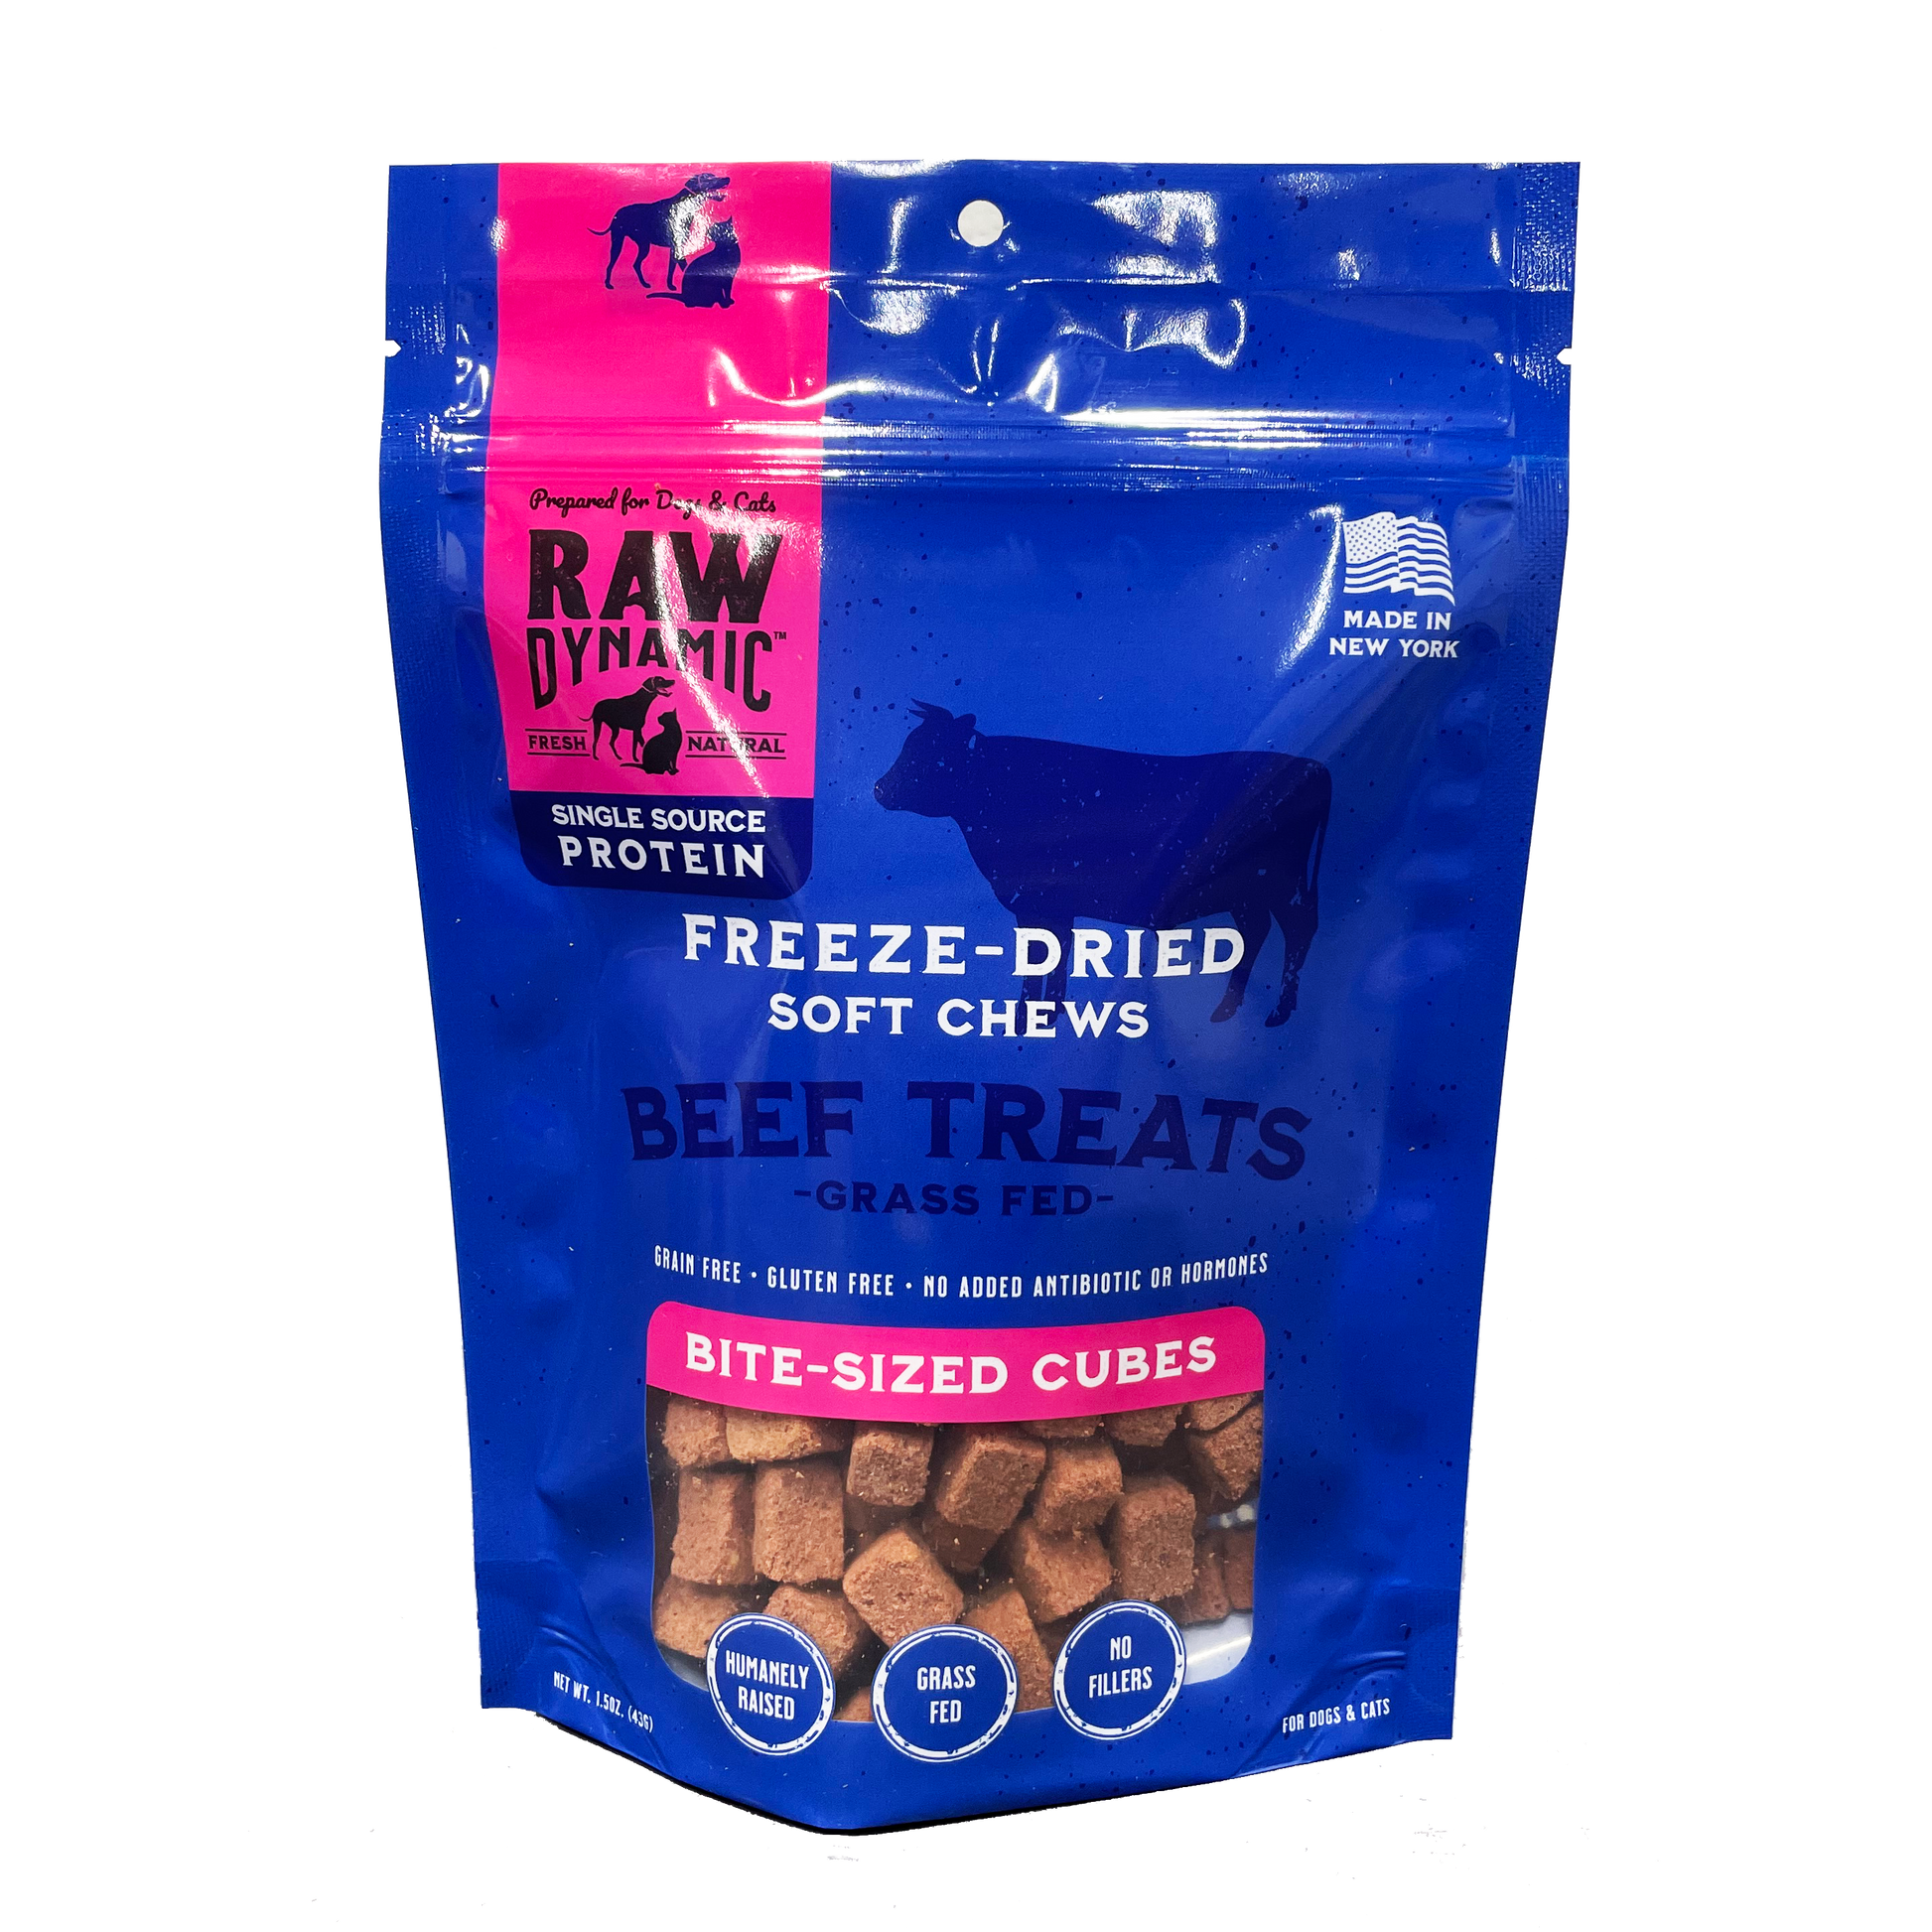  Vital Essentials Freeze Dried Dog Treats, Minnows 1.0 oz : Pet  Supplies